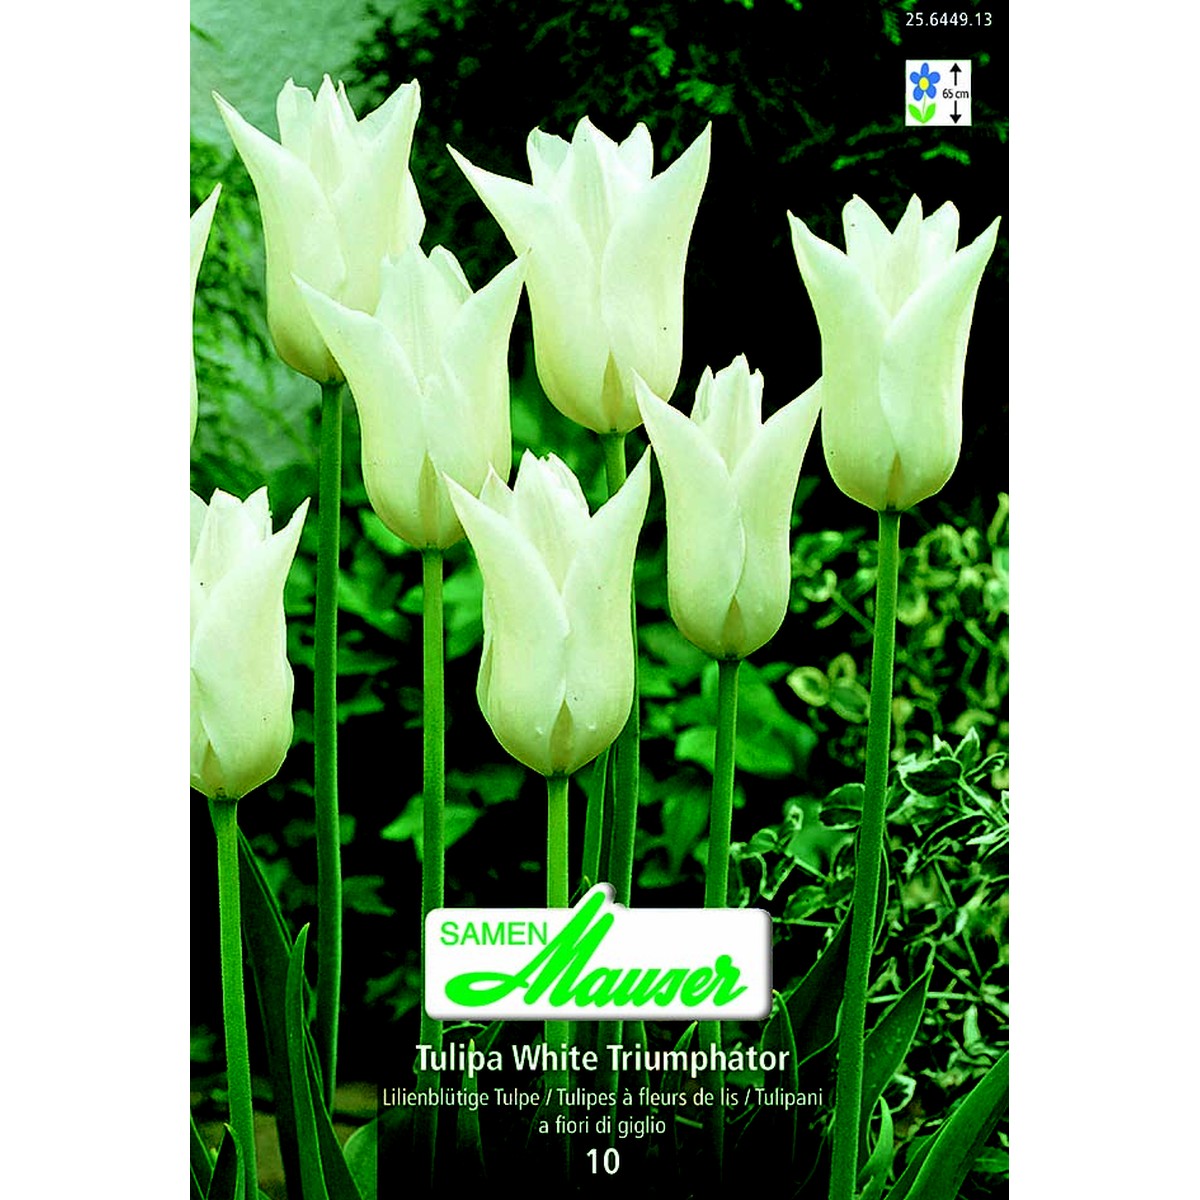   Tulipe TL White Triumphator 10  12/